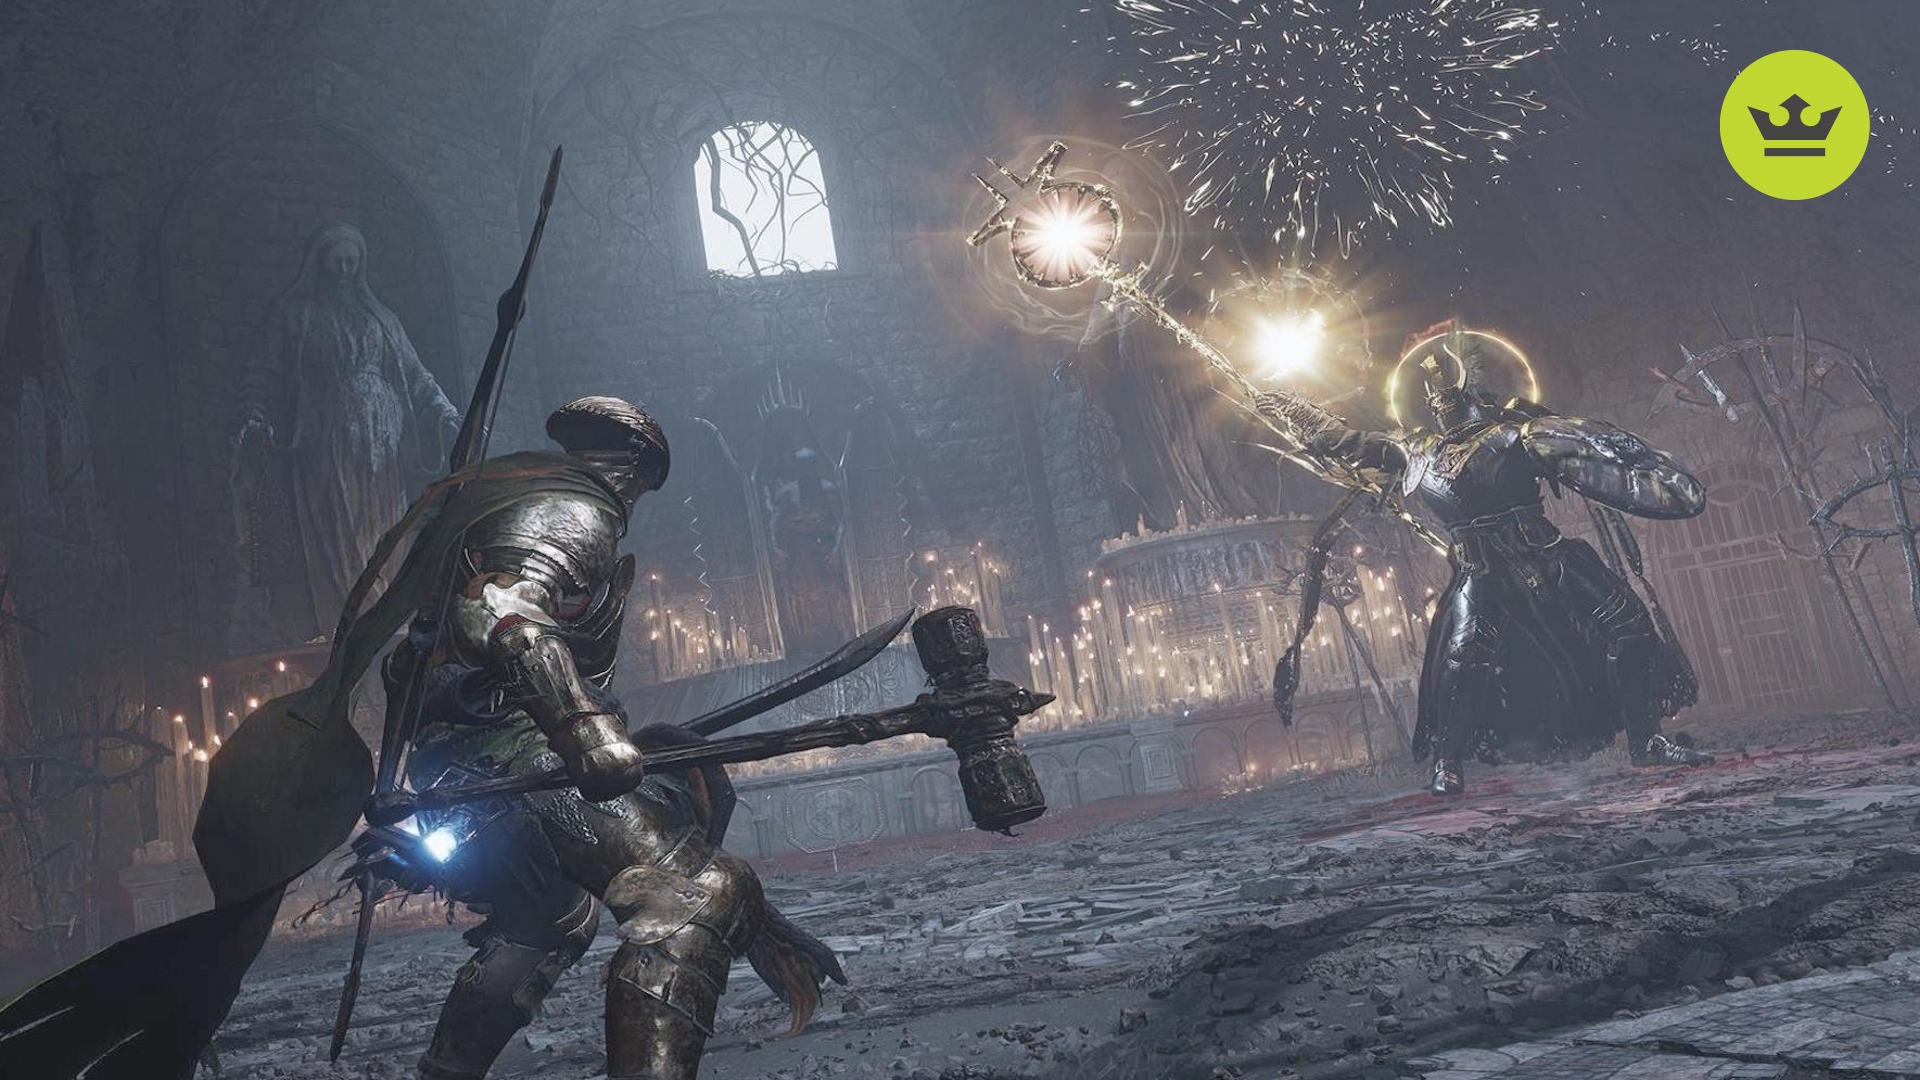 Lords of the Fallen レビュー: プレイヤーは大きなハンマーと剣を振り回し、大きな杖から黄金の呪文を唱える、そびえ立つ鎧を着たボスと対峙します。